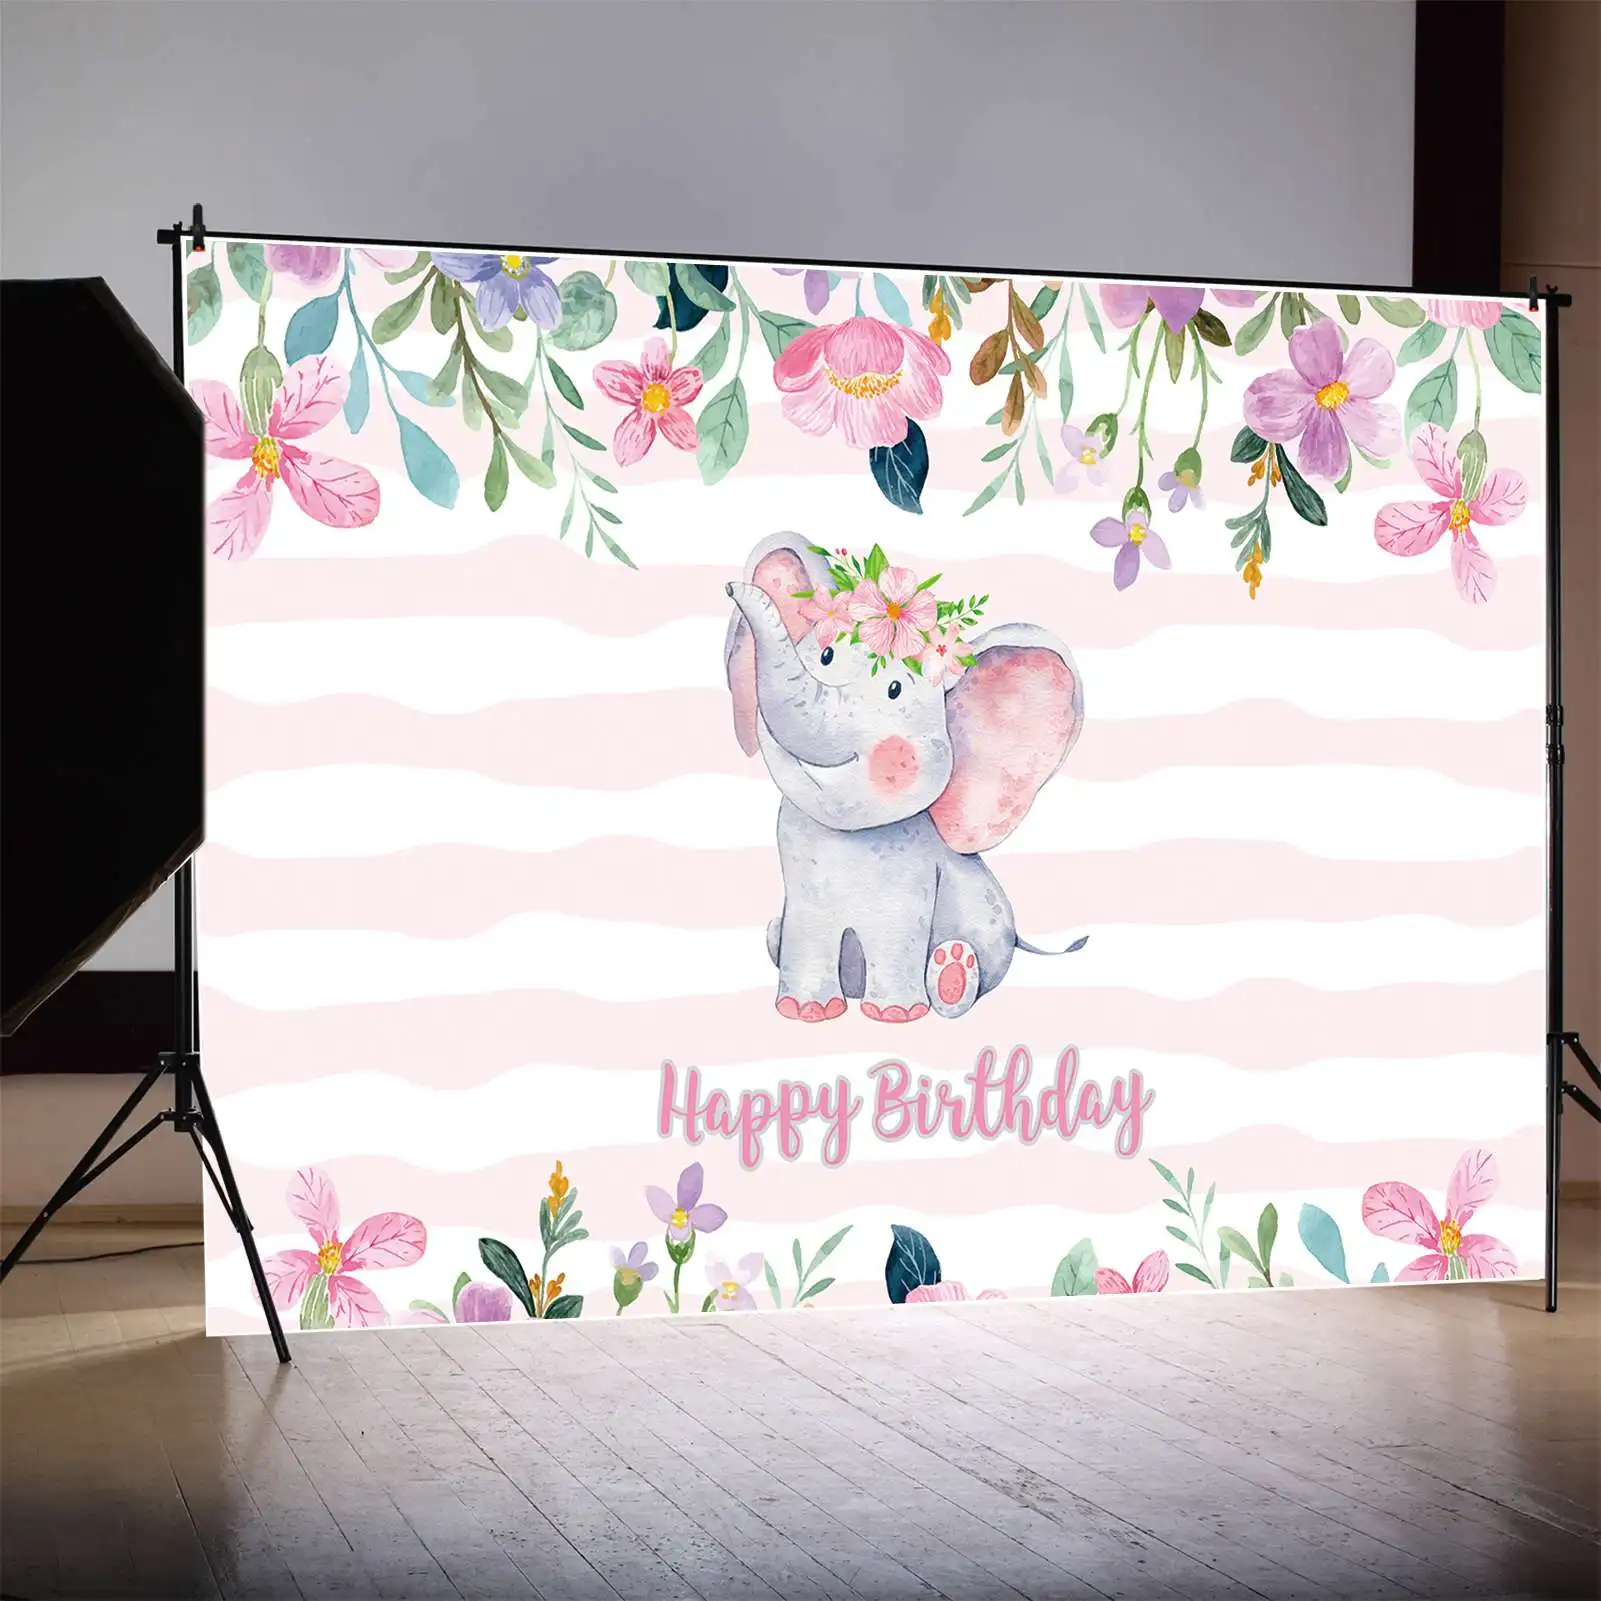 

MOON.QG фото стенд фон Oh Baby Shower слон цветы 1-й День рождения декорация баннер на заказ мальчик или девочка фотореквизит